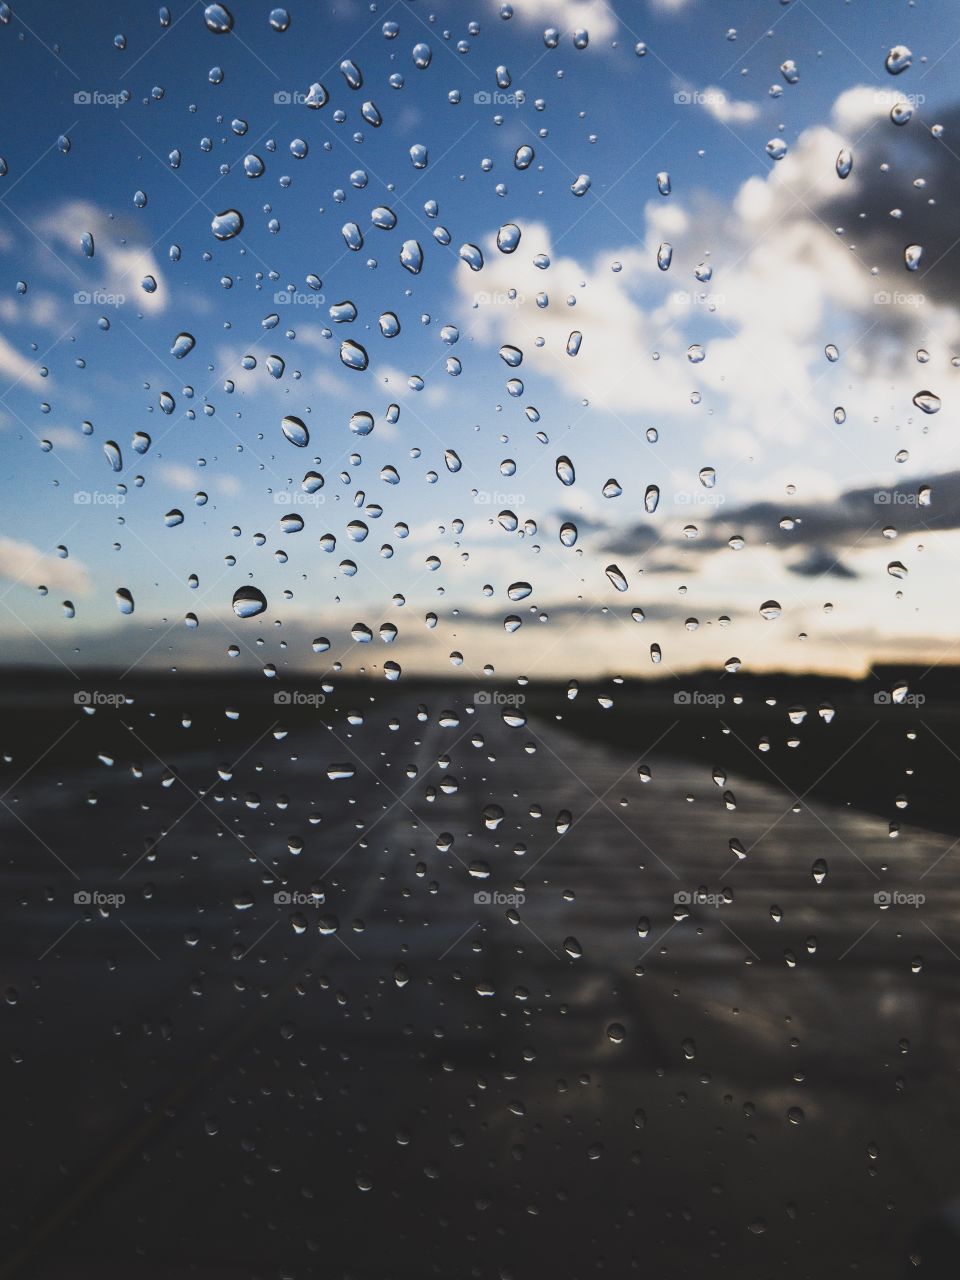 Water droplets on plane window